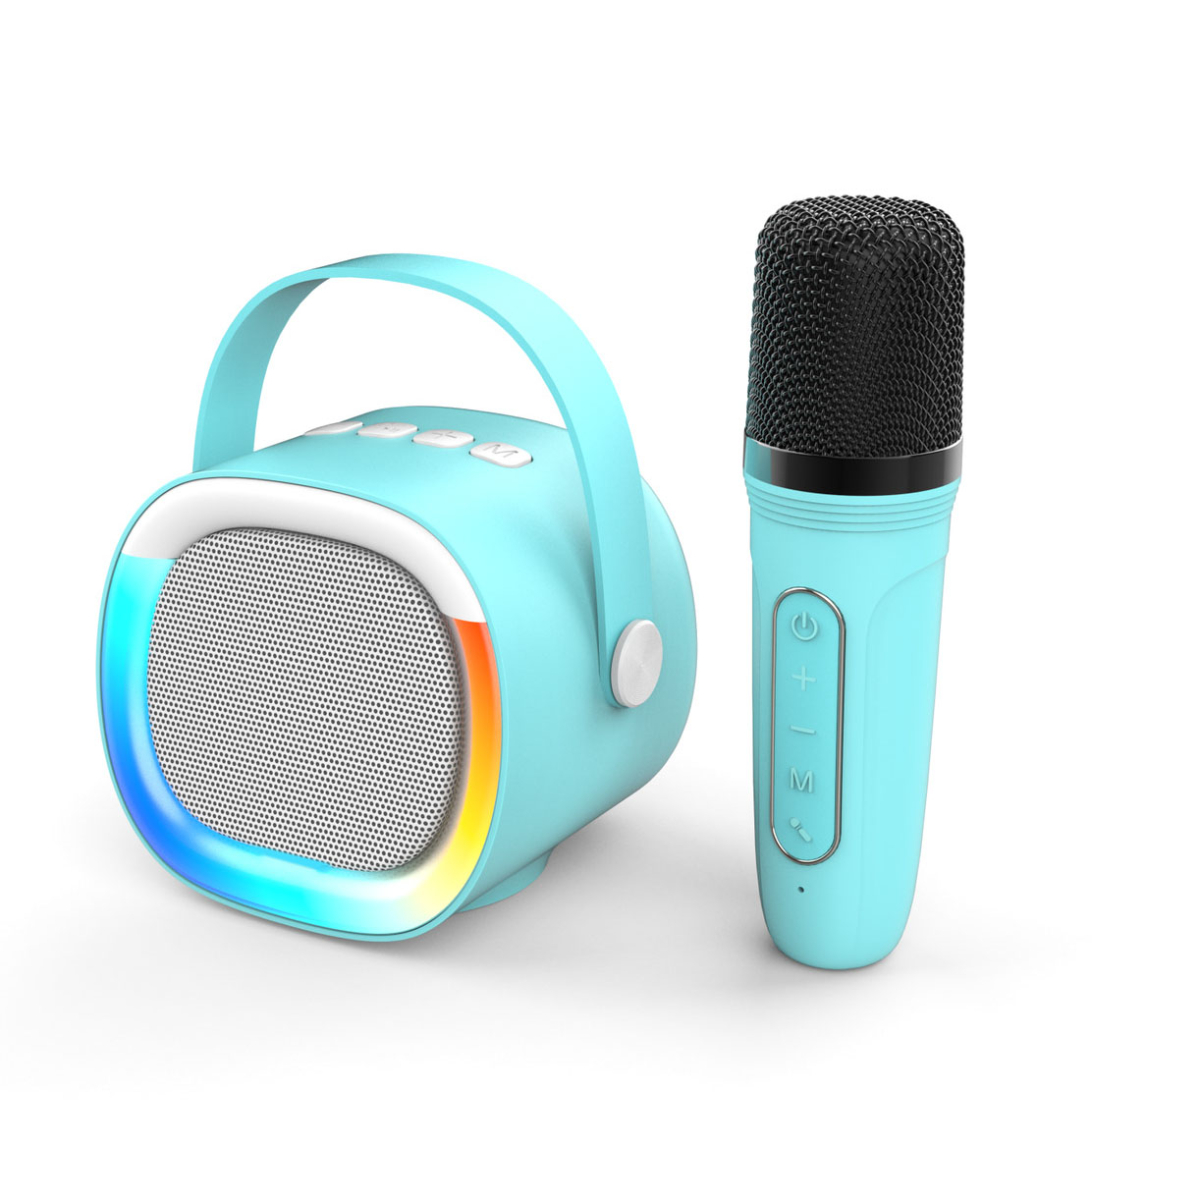 Anruffunktion, Schwarz Sprachansagen, Bluetooth-Lautsprecher, Mikrofon, LED-Bluetooth-Lautsprecher BYTELIKE mit Drahtloser Tragbar